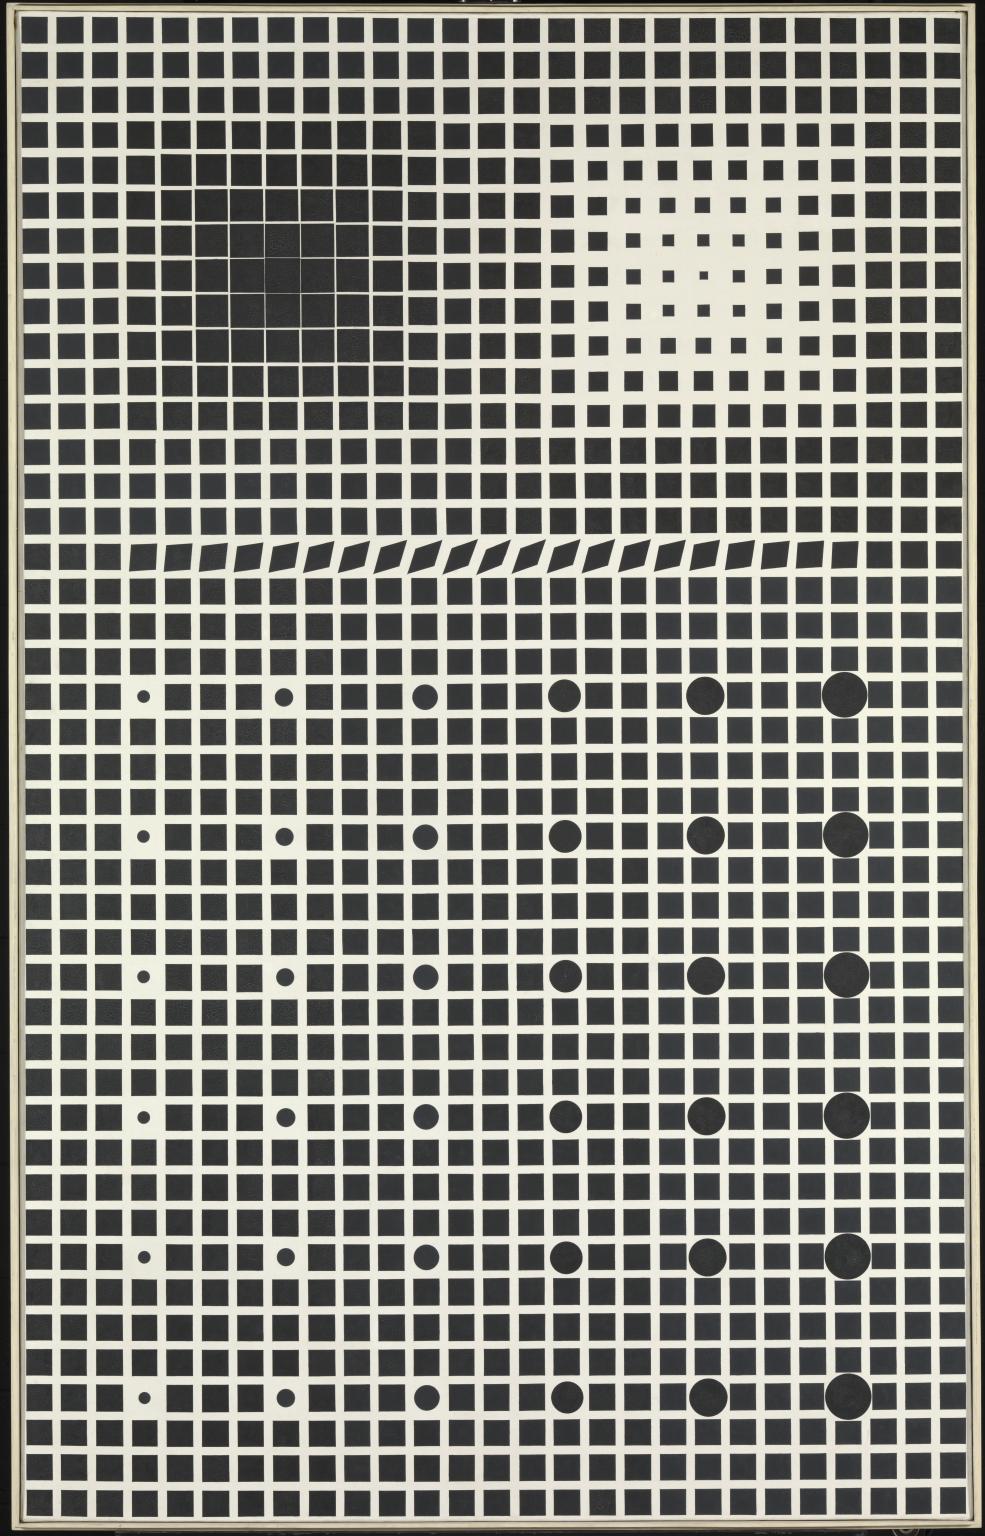 الانفجار الكونى by Victor Vasarely - ١٩٥٩ - ١٩٦١ - 244 x 154 cm 